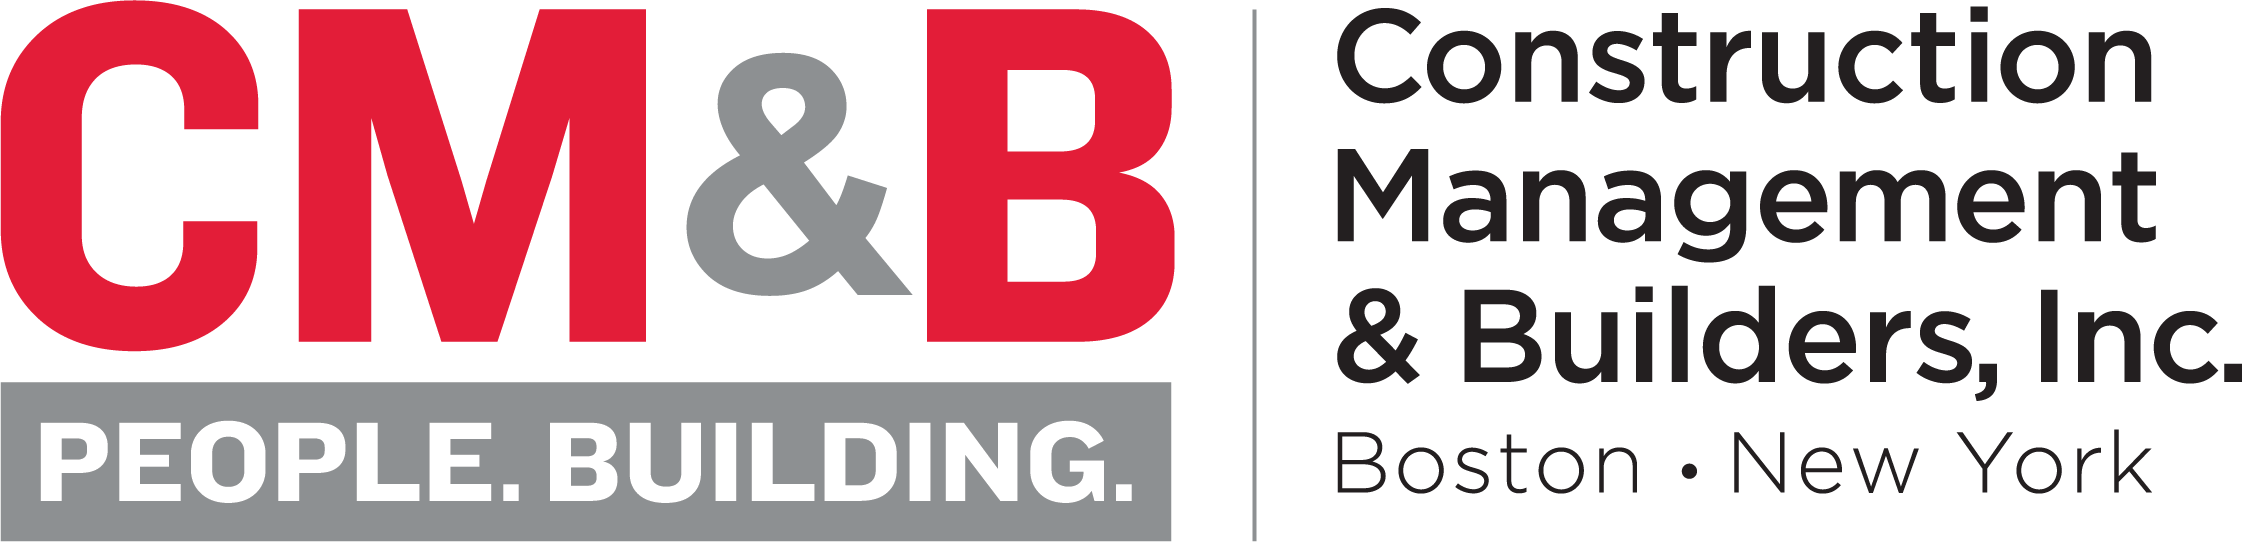 Construction Management & Builders, Inc. logo